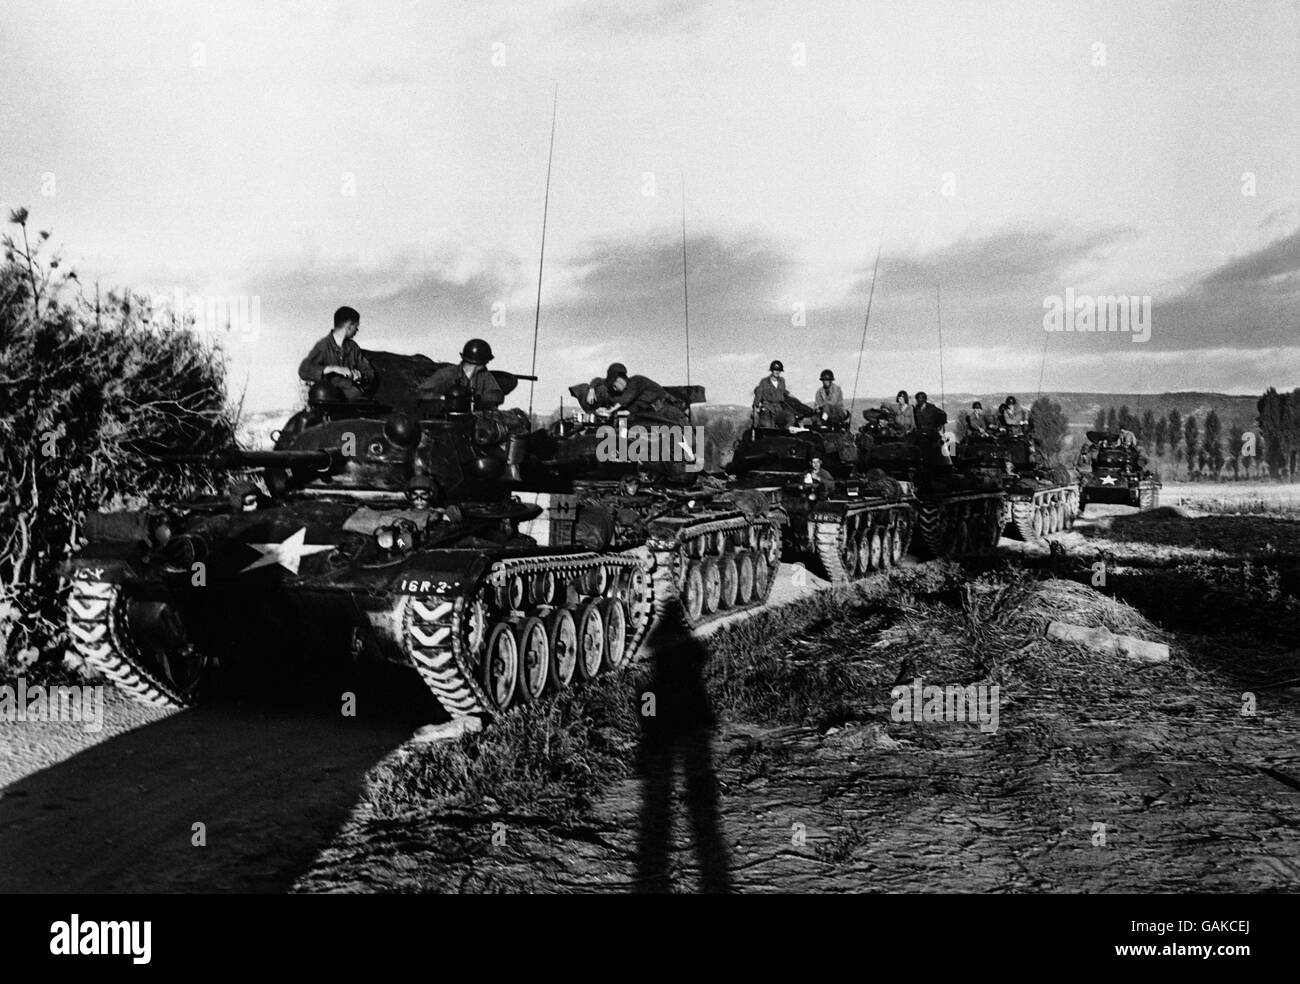 Les tanks américains se déplacent vers le haut les tanks américains se déplaçant vers les lignes de front d'une zone arrière de bivouac en corée du Sud sont montrés dans cette image. Banque D'Images